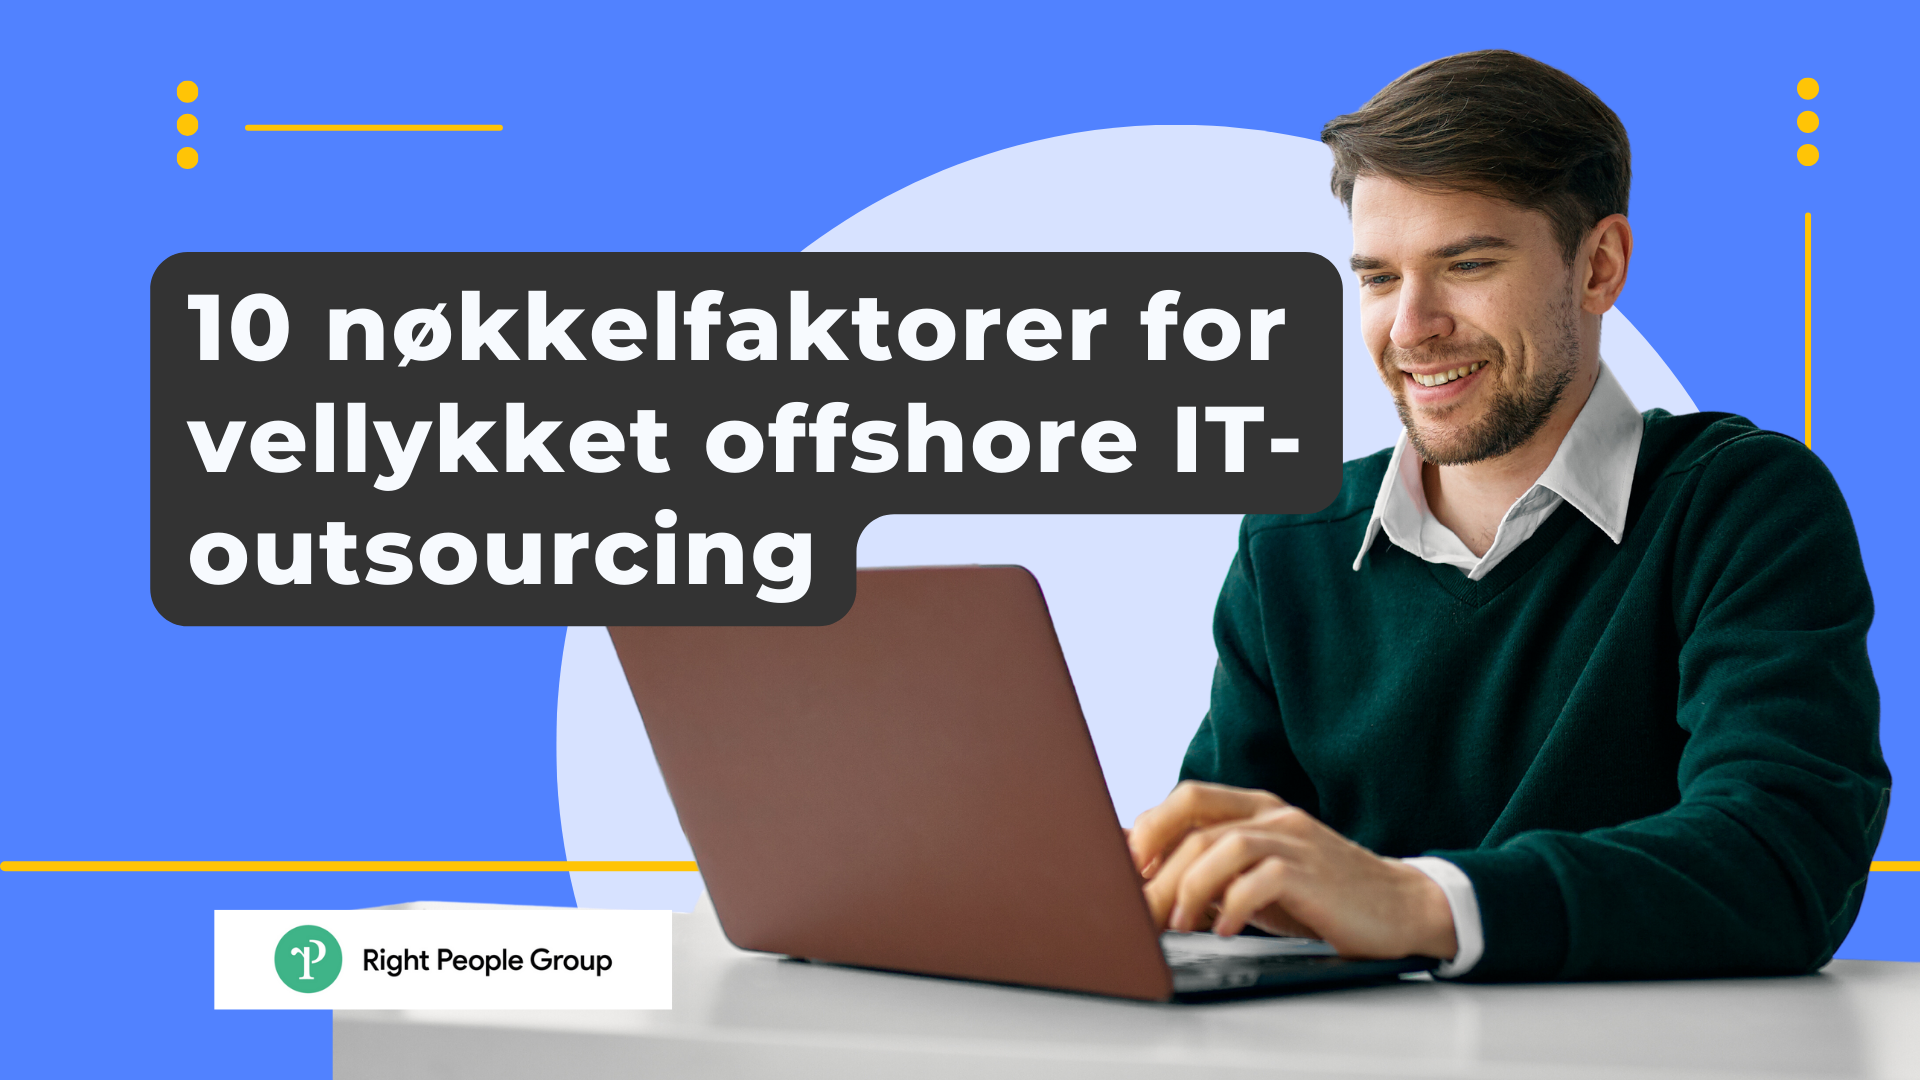 10 nøkkelfaktorer for vellykket offshore IT-outsourcing